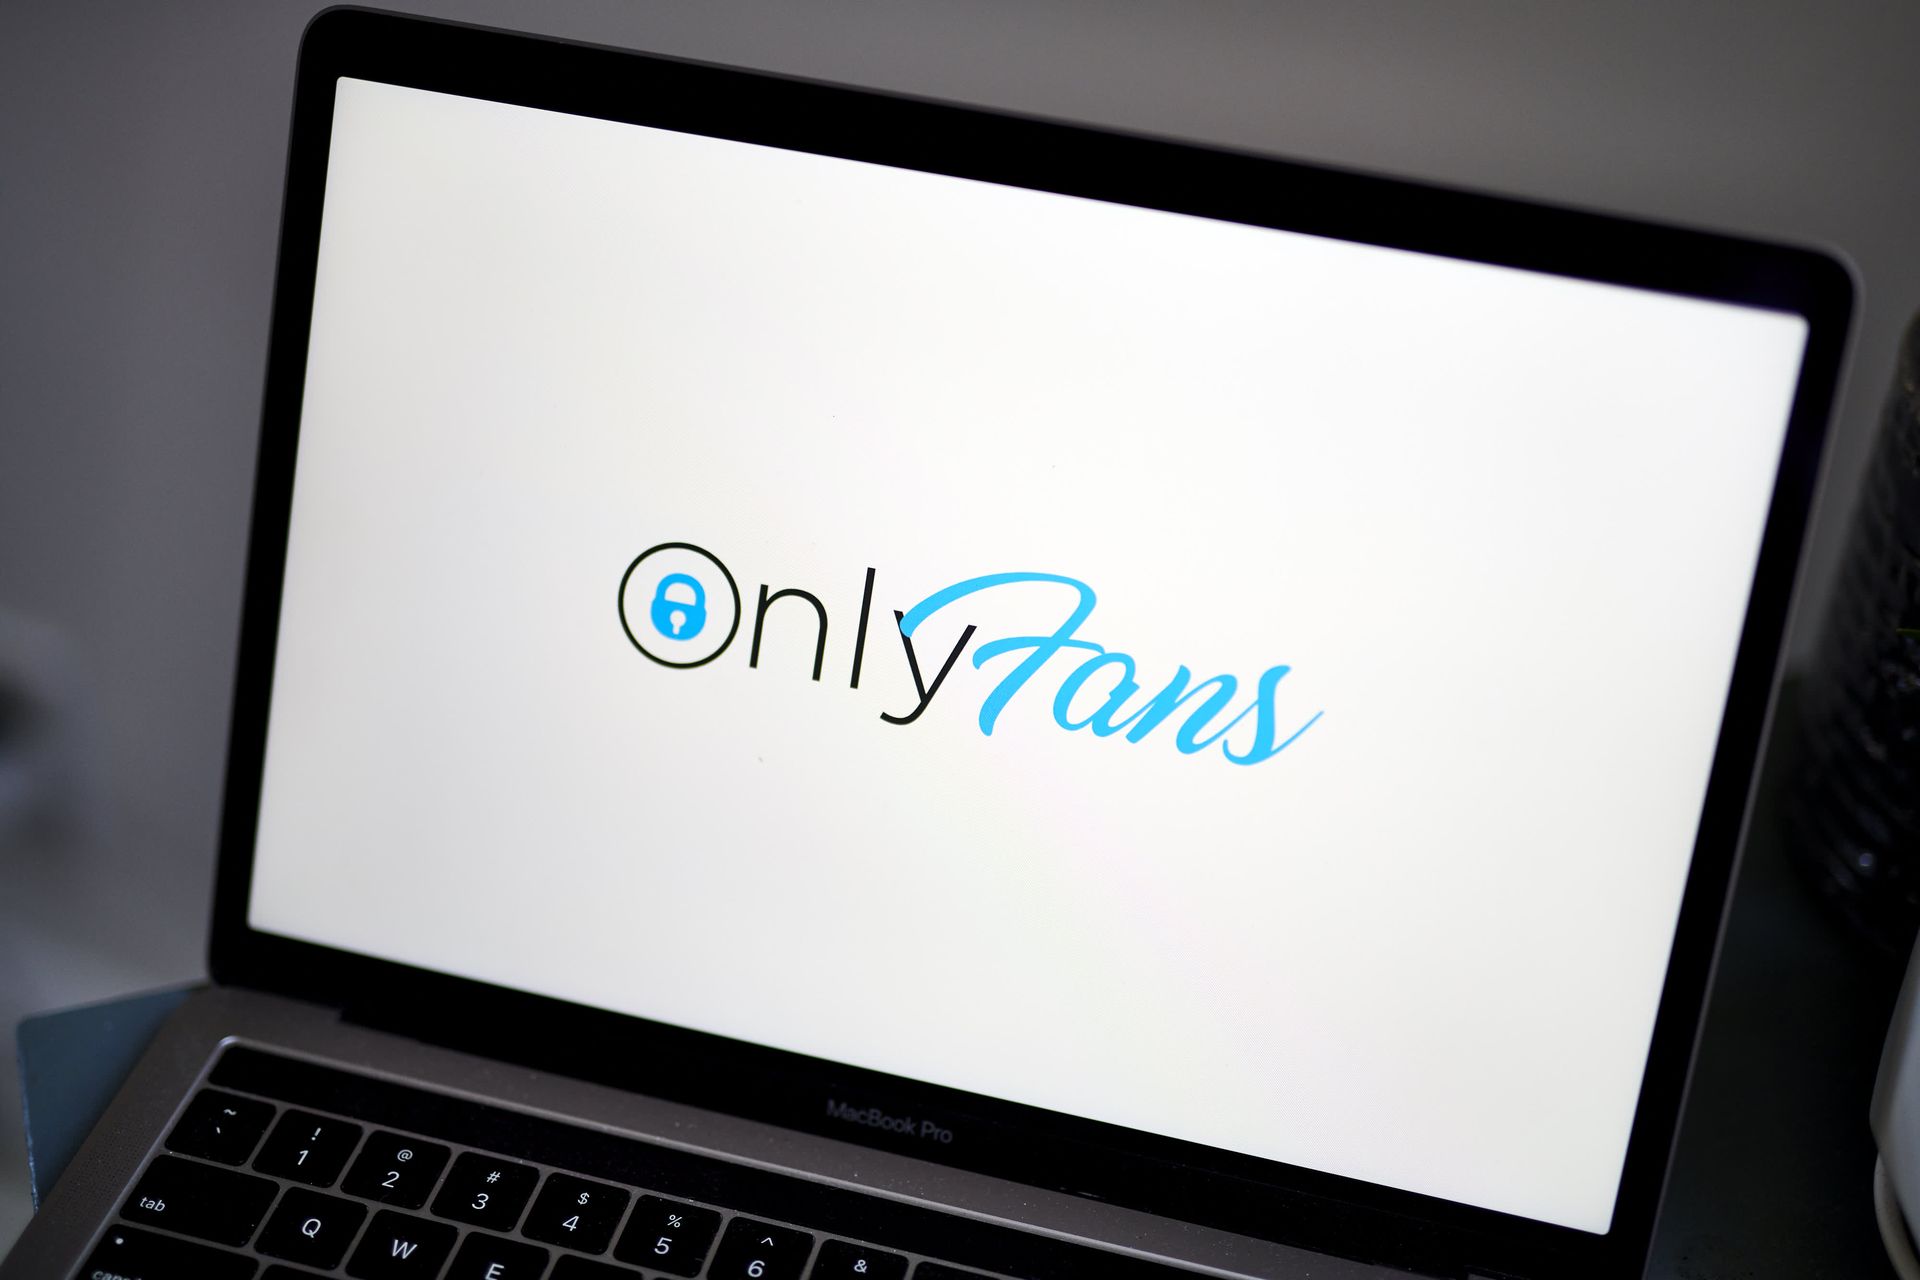 Как найти людей на Onlyfans по местоположению, электронной почте, имени, социальным сетям, интересам и имени пользователя?